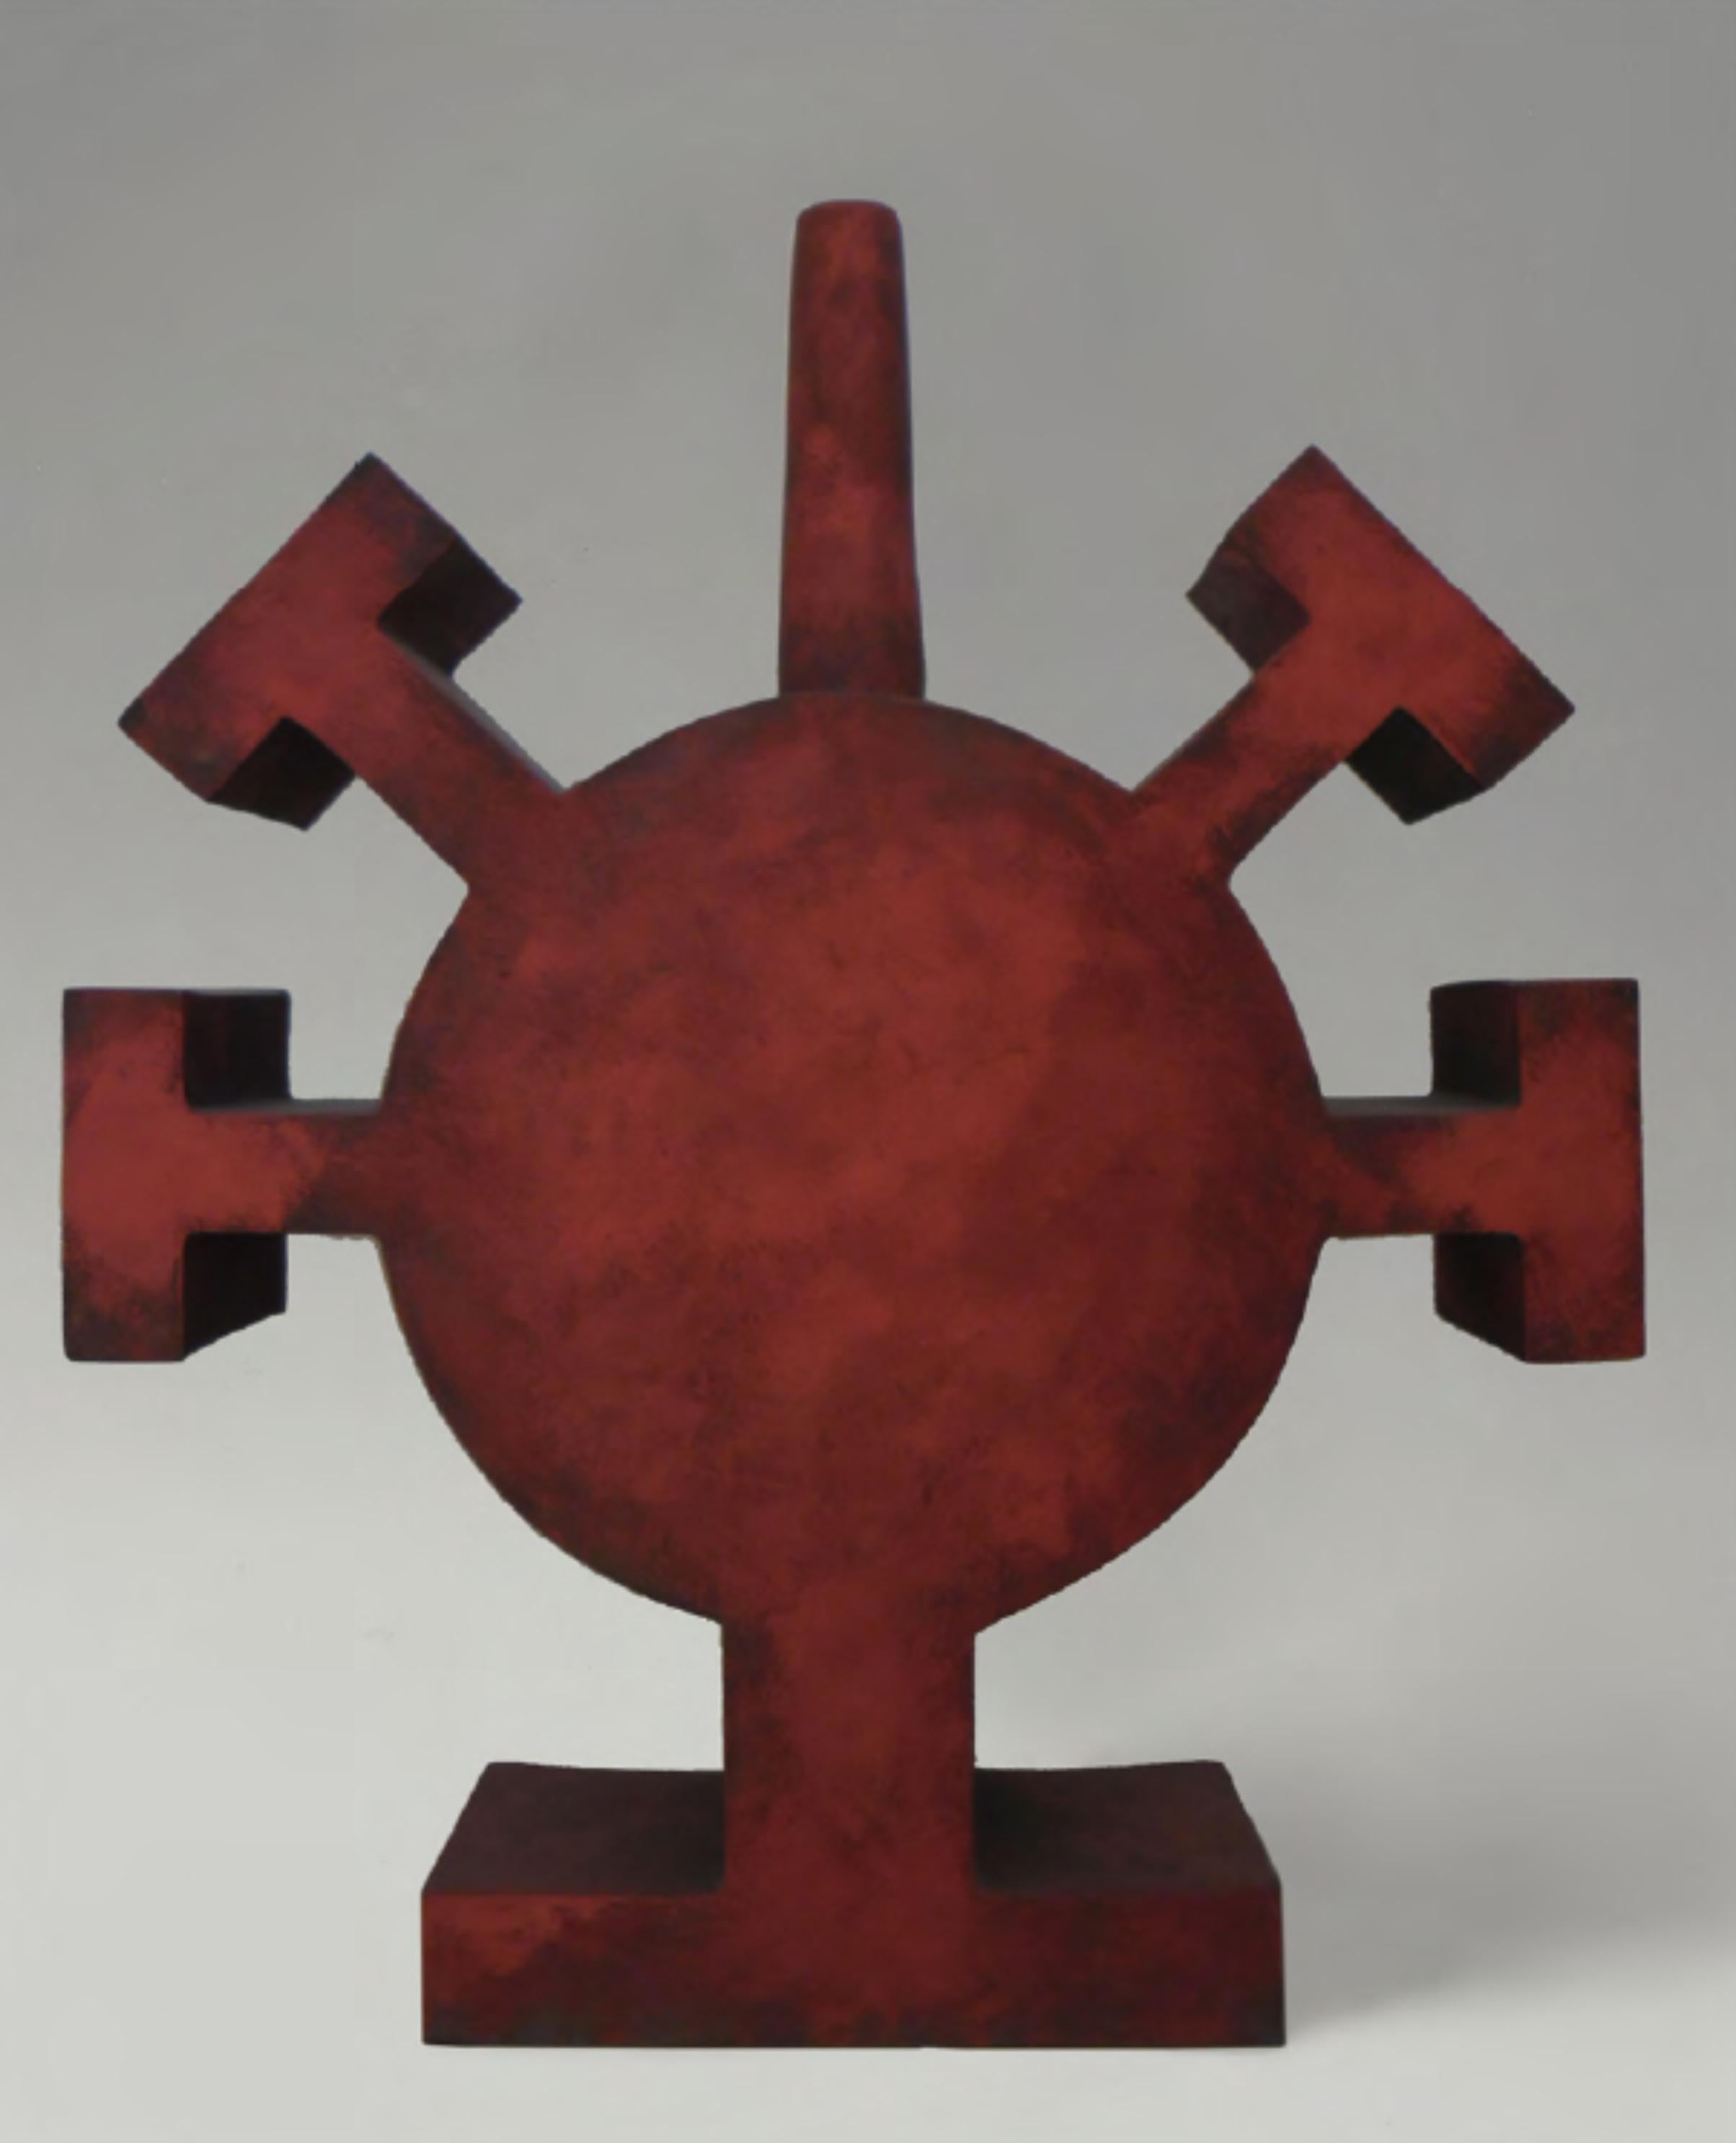 CF Te19 Terre von Caturegli Formica
Abmessungen: B 45 x H 56 cm
MATERIALIEN: Keramik

Terres, Dakar, Senegal, 1987-1991 

TERRES ist eine Serie von symbolischen Keramikskulpturen, die in Dakar, Senegal, im Atelier 